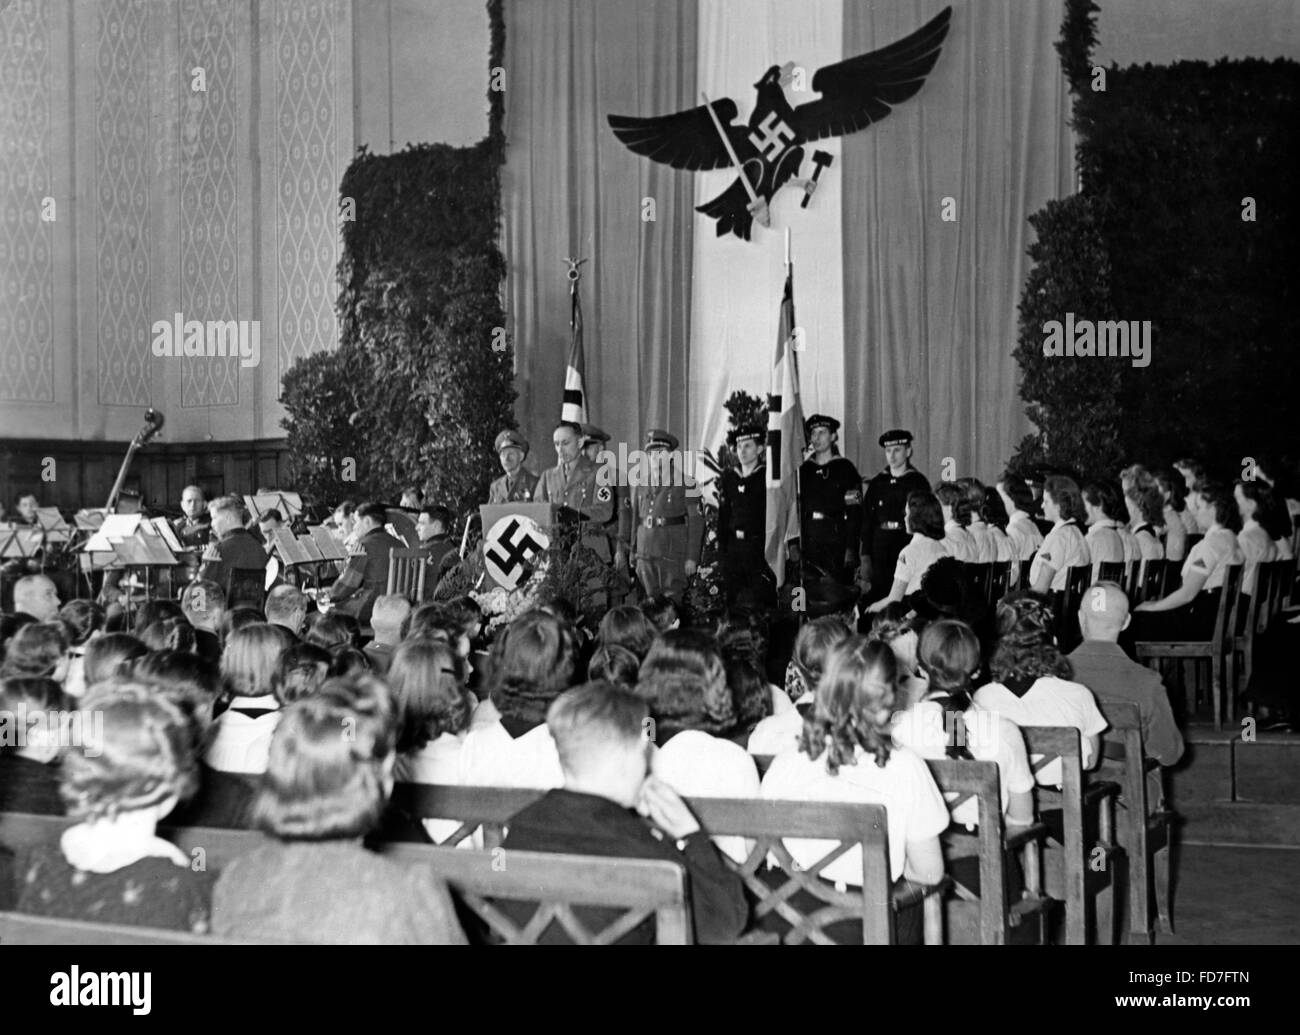 Verpflichtung der Jugend (Verpflichtung der Jugend) Zeremonie in der Hochzeit-Schule in Berlin-Lichterfelde, 1942 Stockfoto